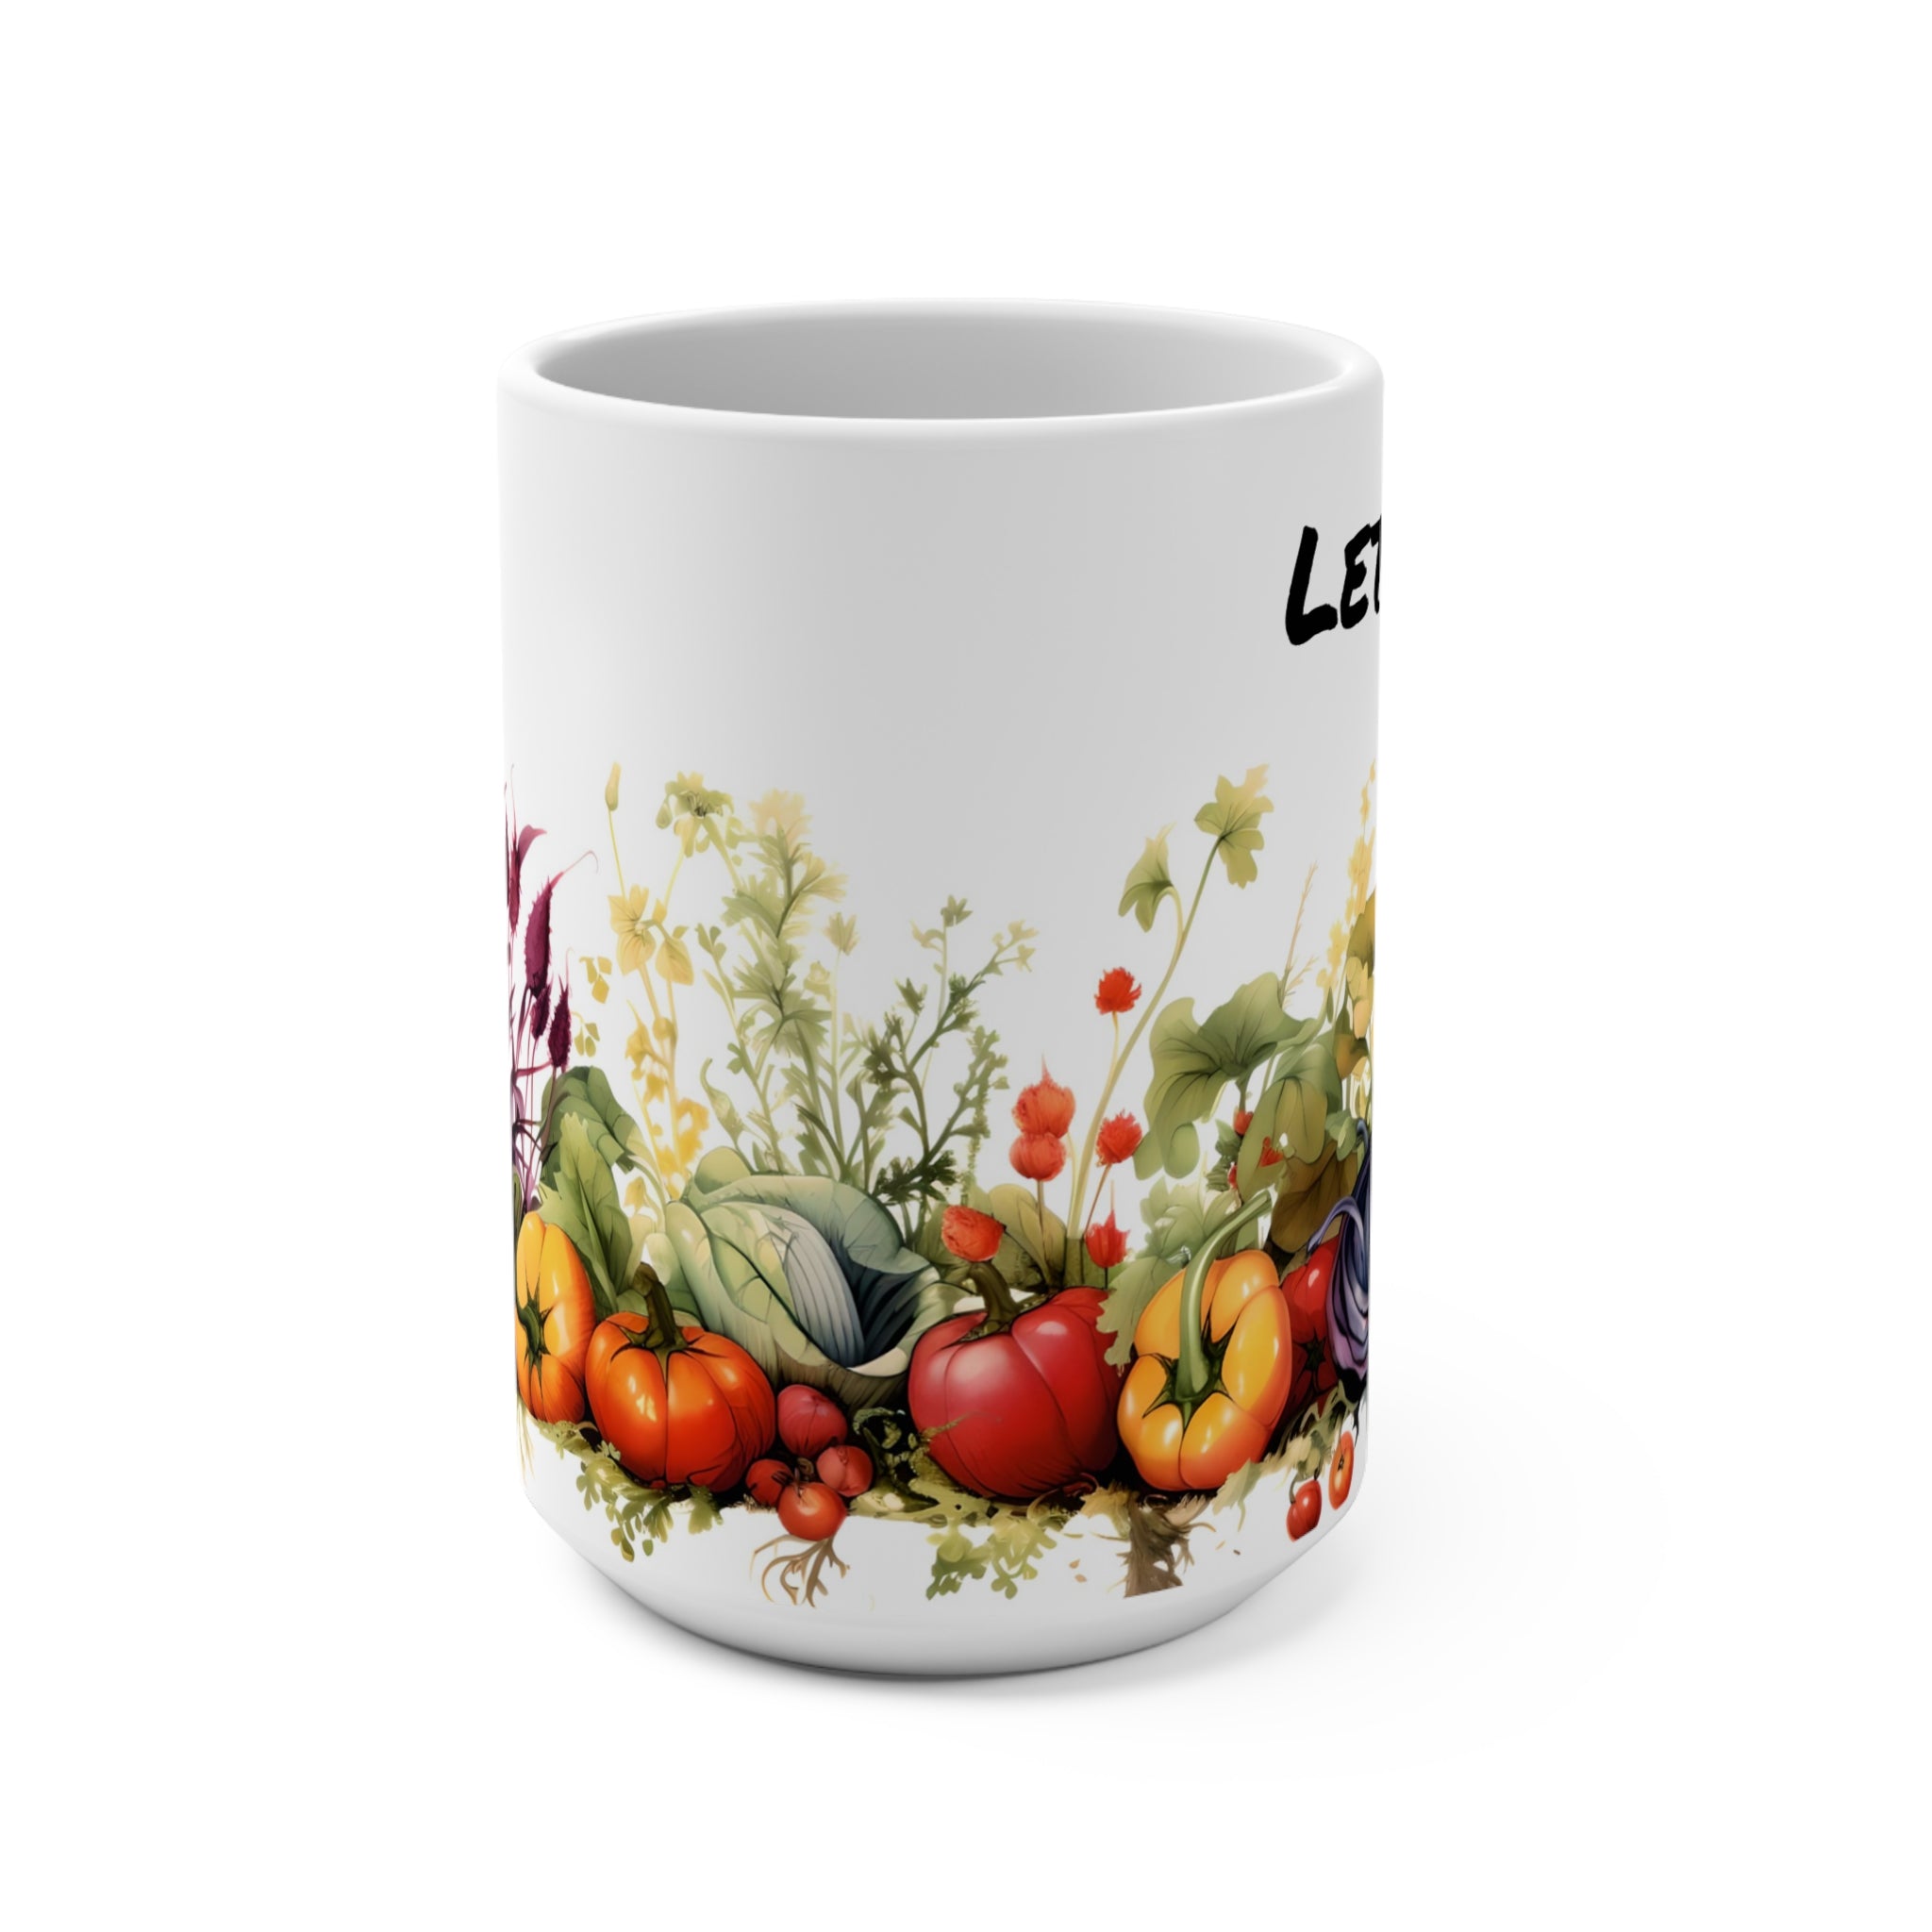 Gardener's Delight - Mug 15oz